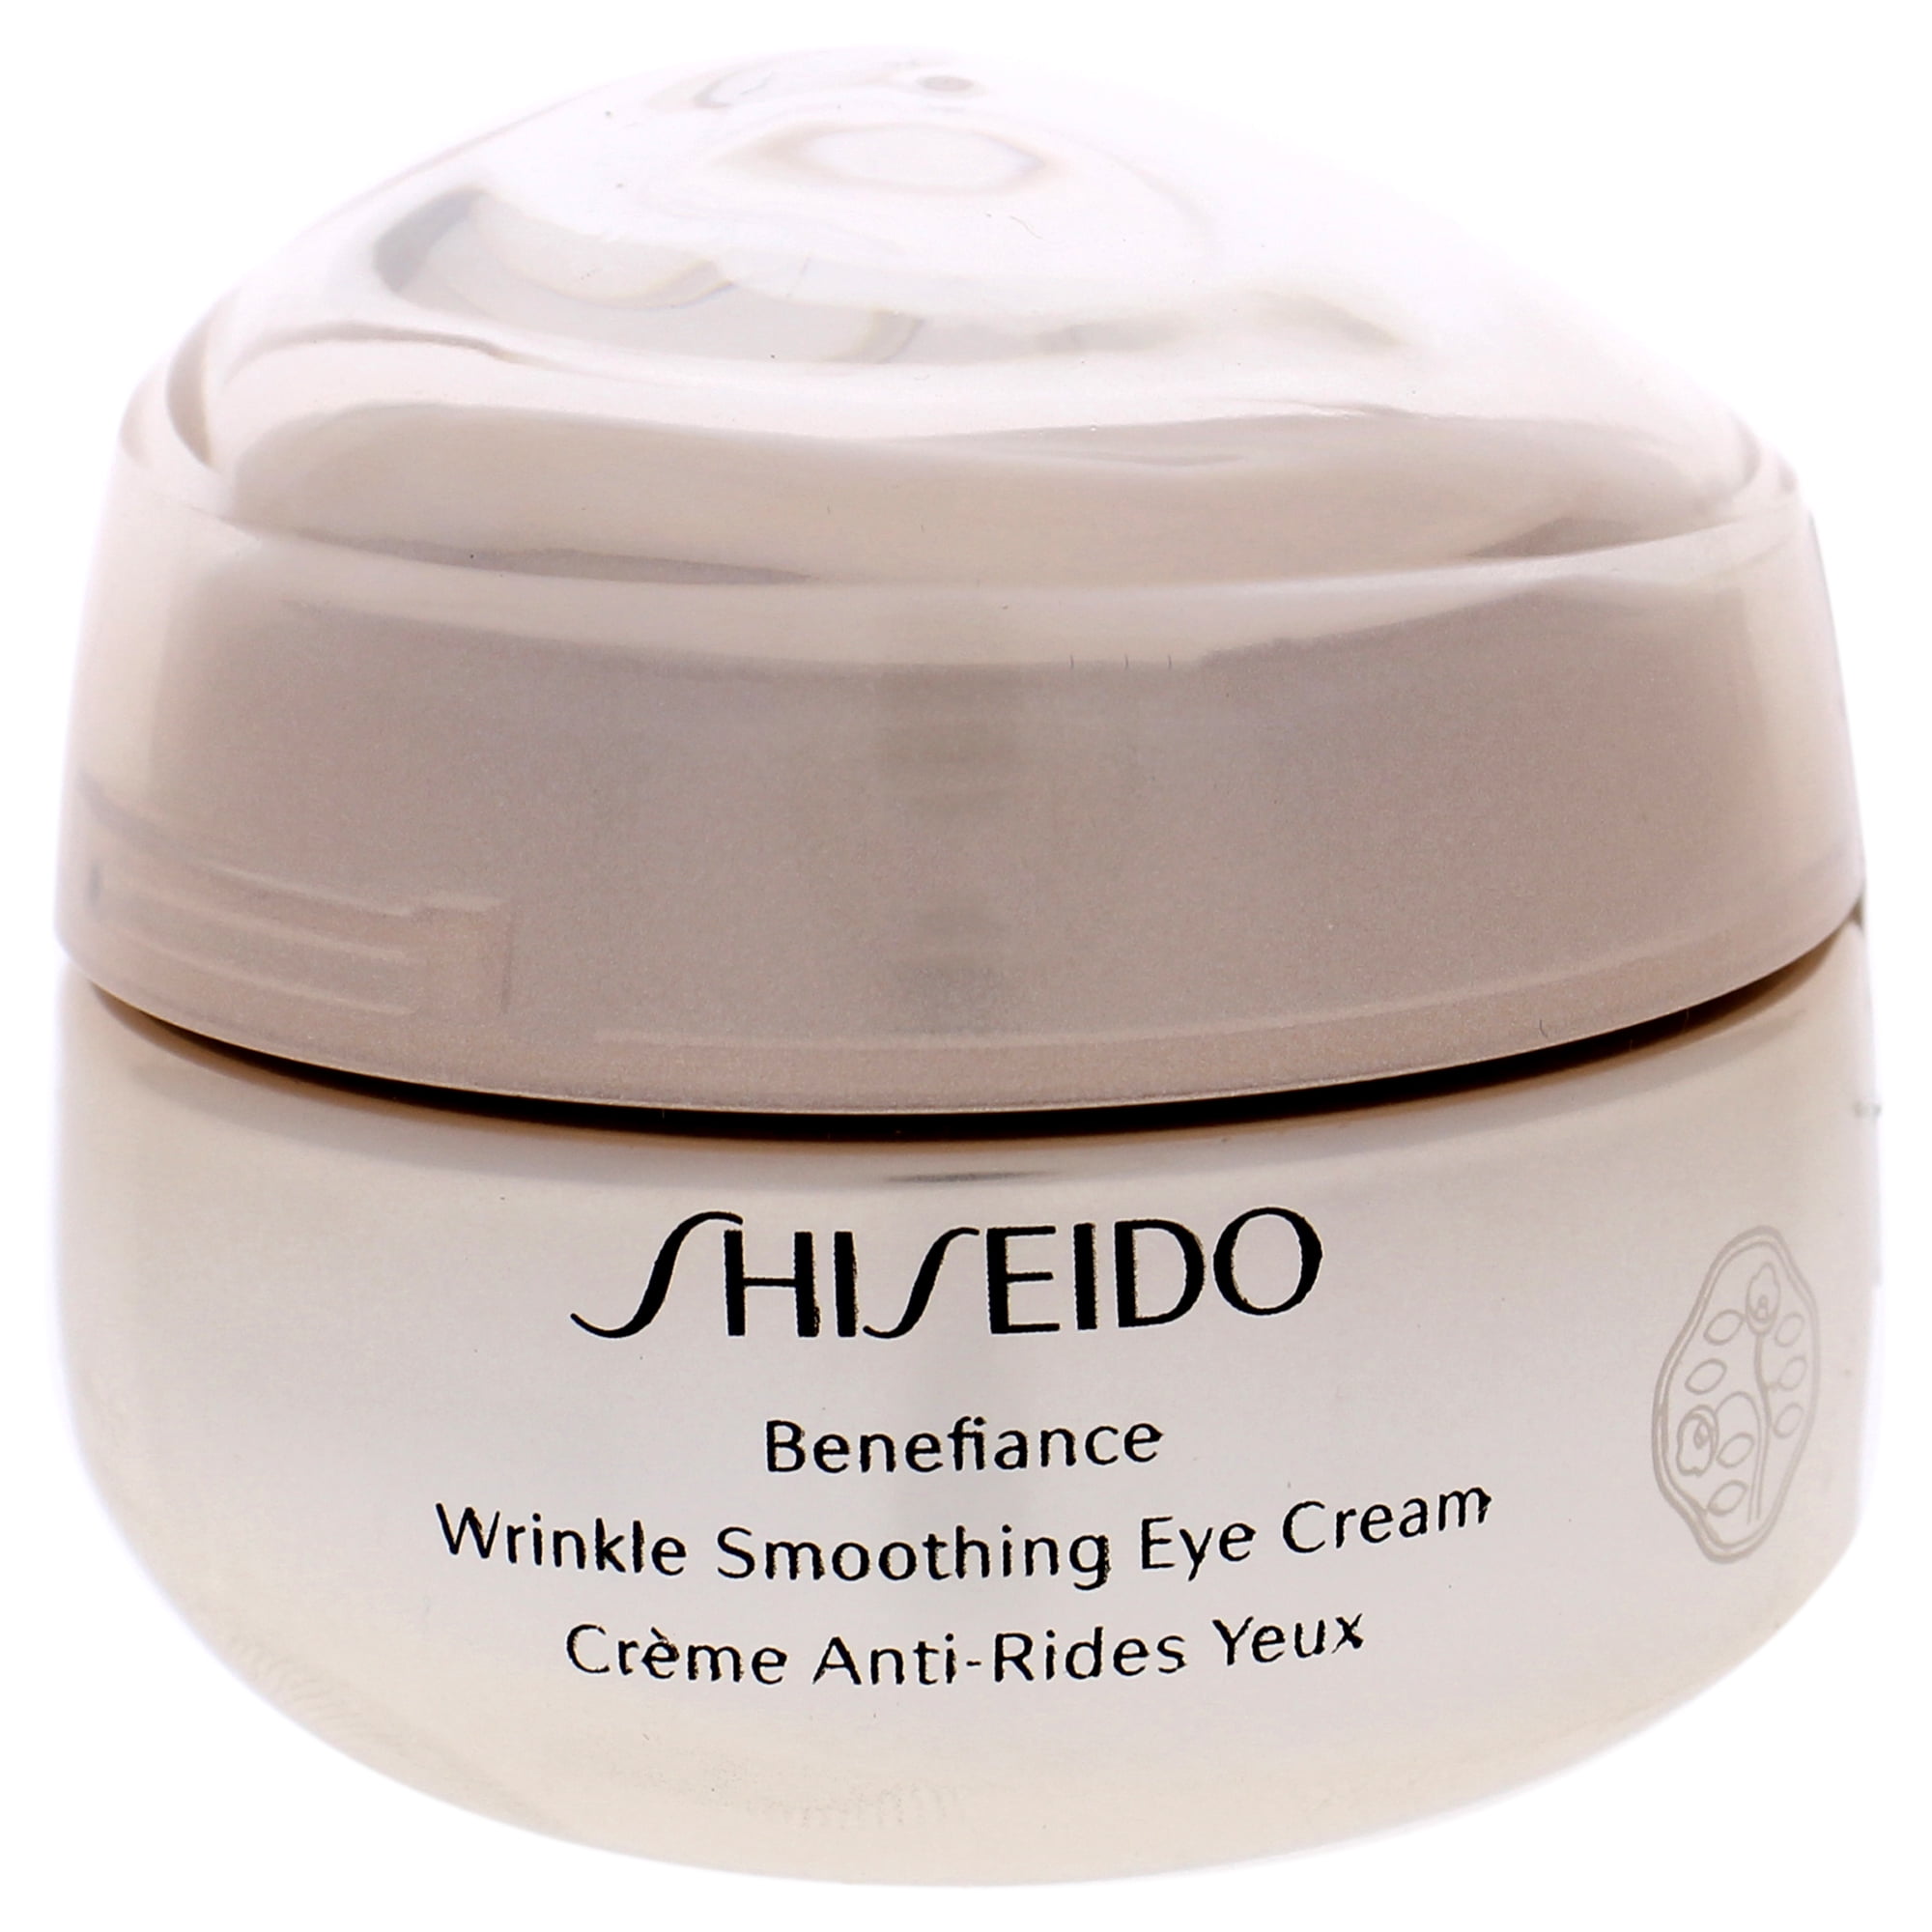 Shiseido benefiance wrinkle smoothing. Shiseido Benefiance Eye Cream. Shiseido // крем Benefiance Wrinkle Smoothing Eye Cream 15ml. Shiseido Wrinkle Smoothing Cream. Корейский косметика Eye Cream Byaning.